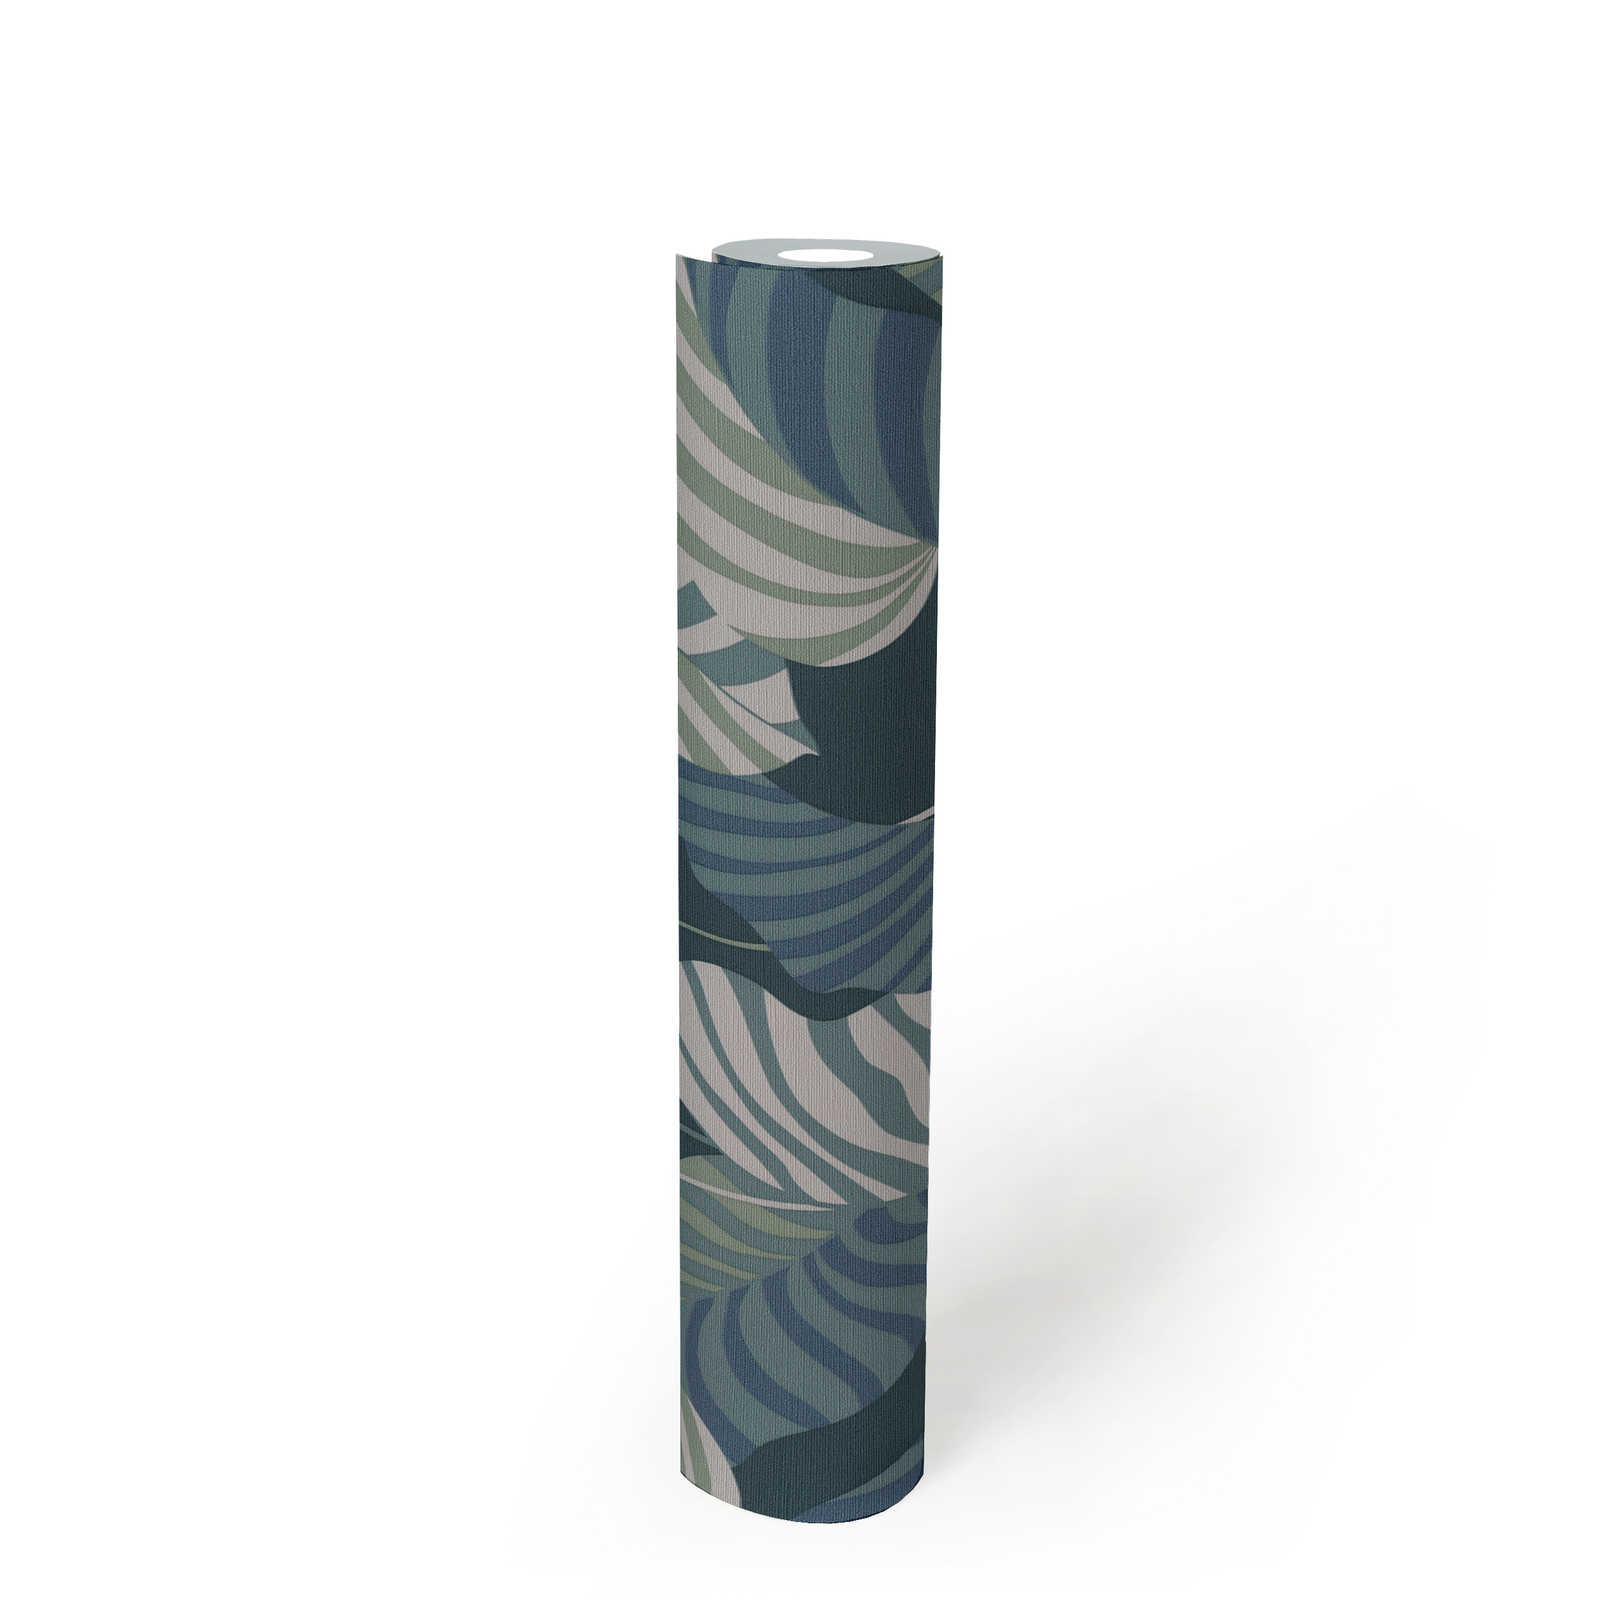             Jungle stijl vliesbehang met bladeren - blauw, groen, wit
        